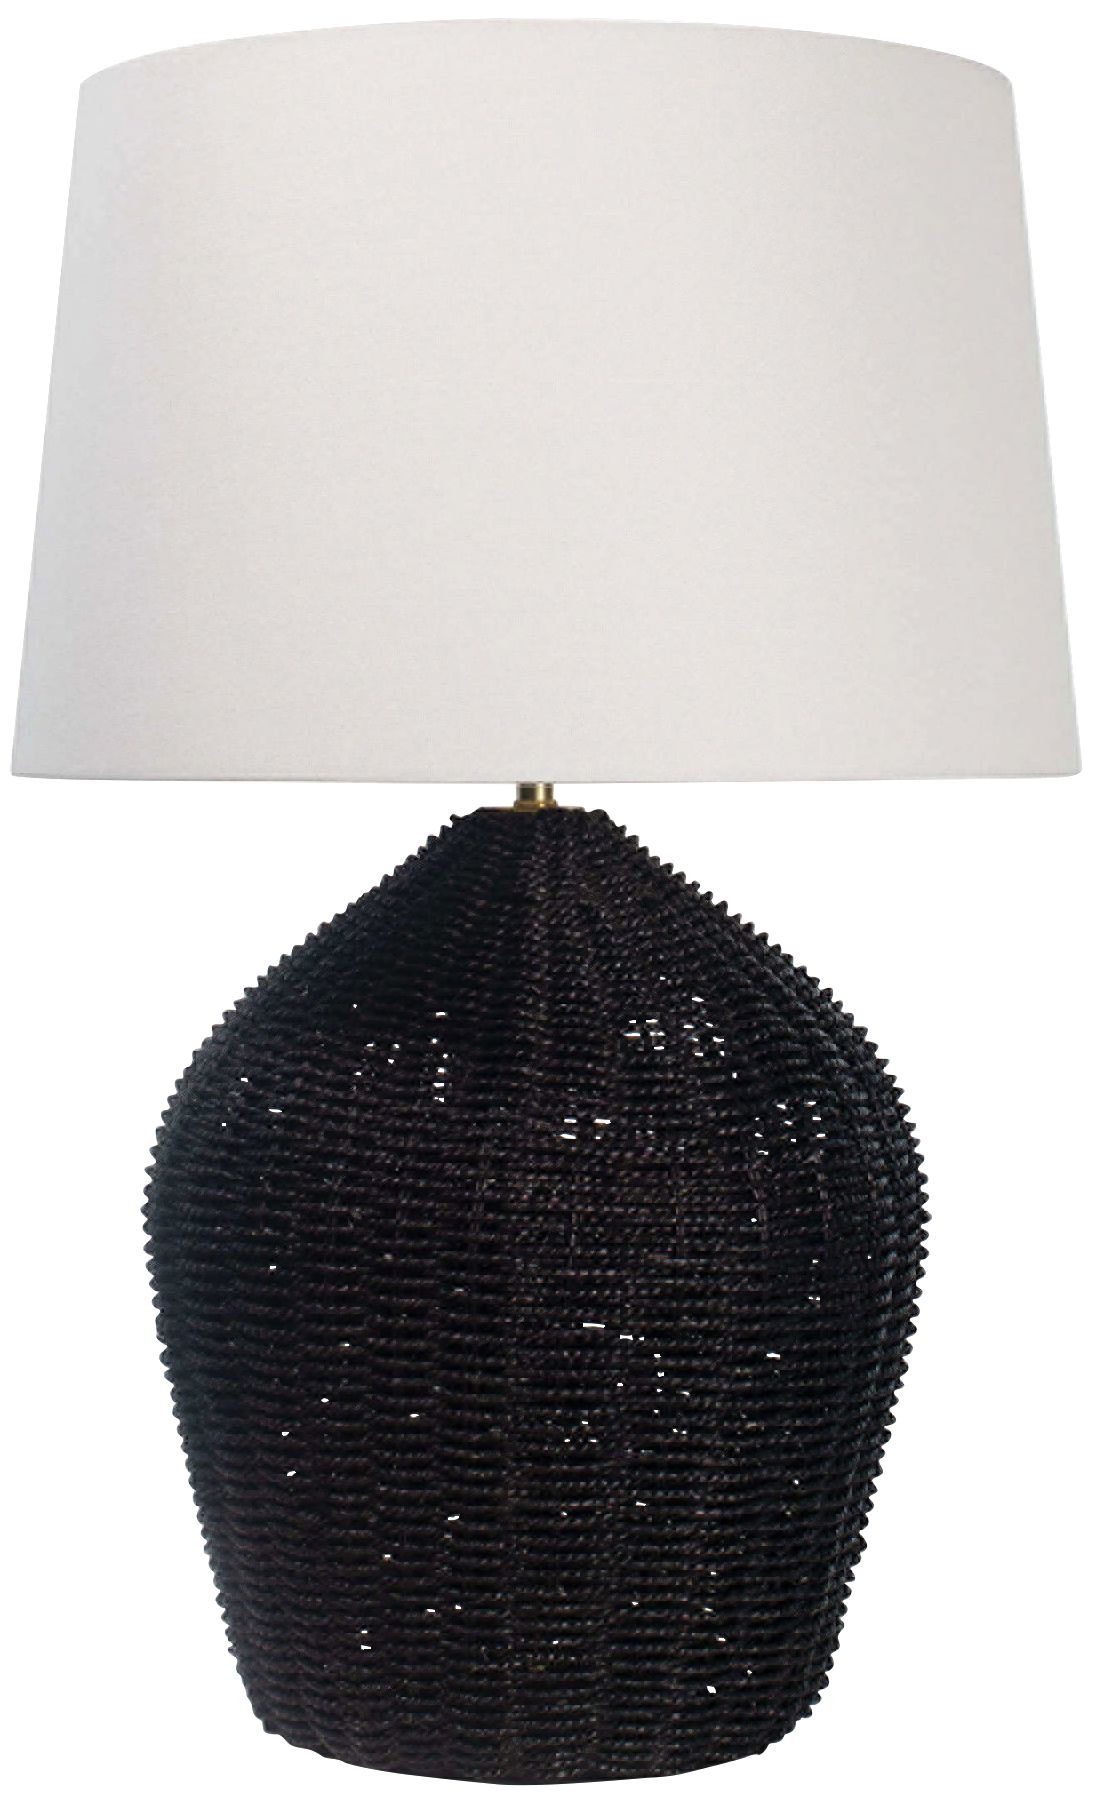 Regina Andrew Design Georgian Black Rattan Table Lamp